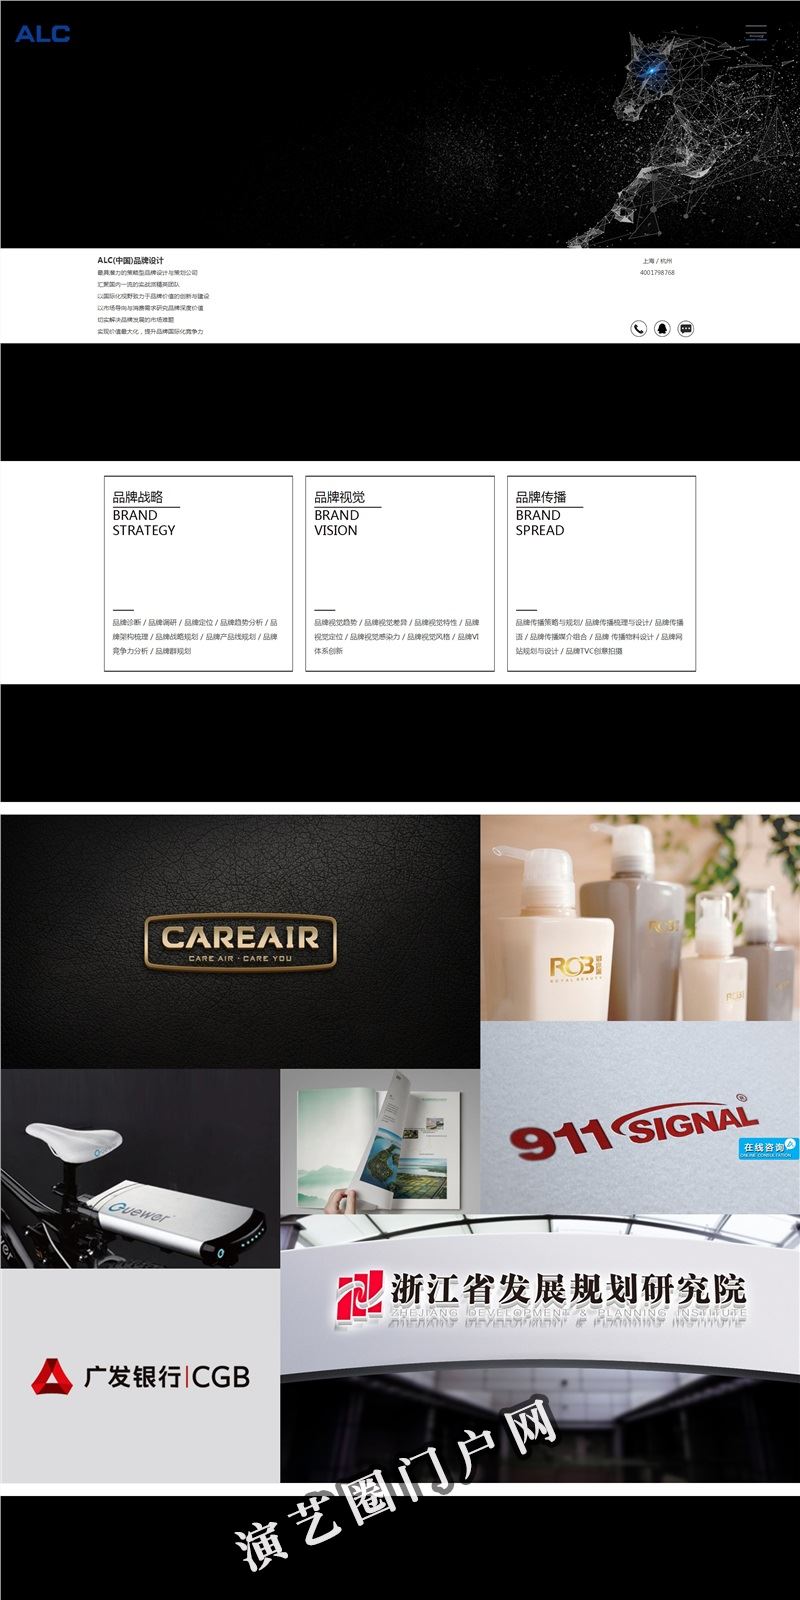 包装设计公司-画册设计公司-杭州vi设计-企业宣传片制作-宣传片拍摄公司-广告片拍摄-si设计-alc品牌设计截图